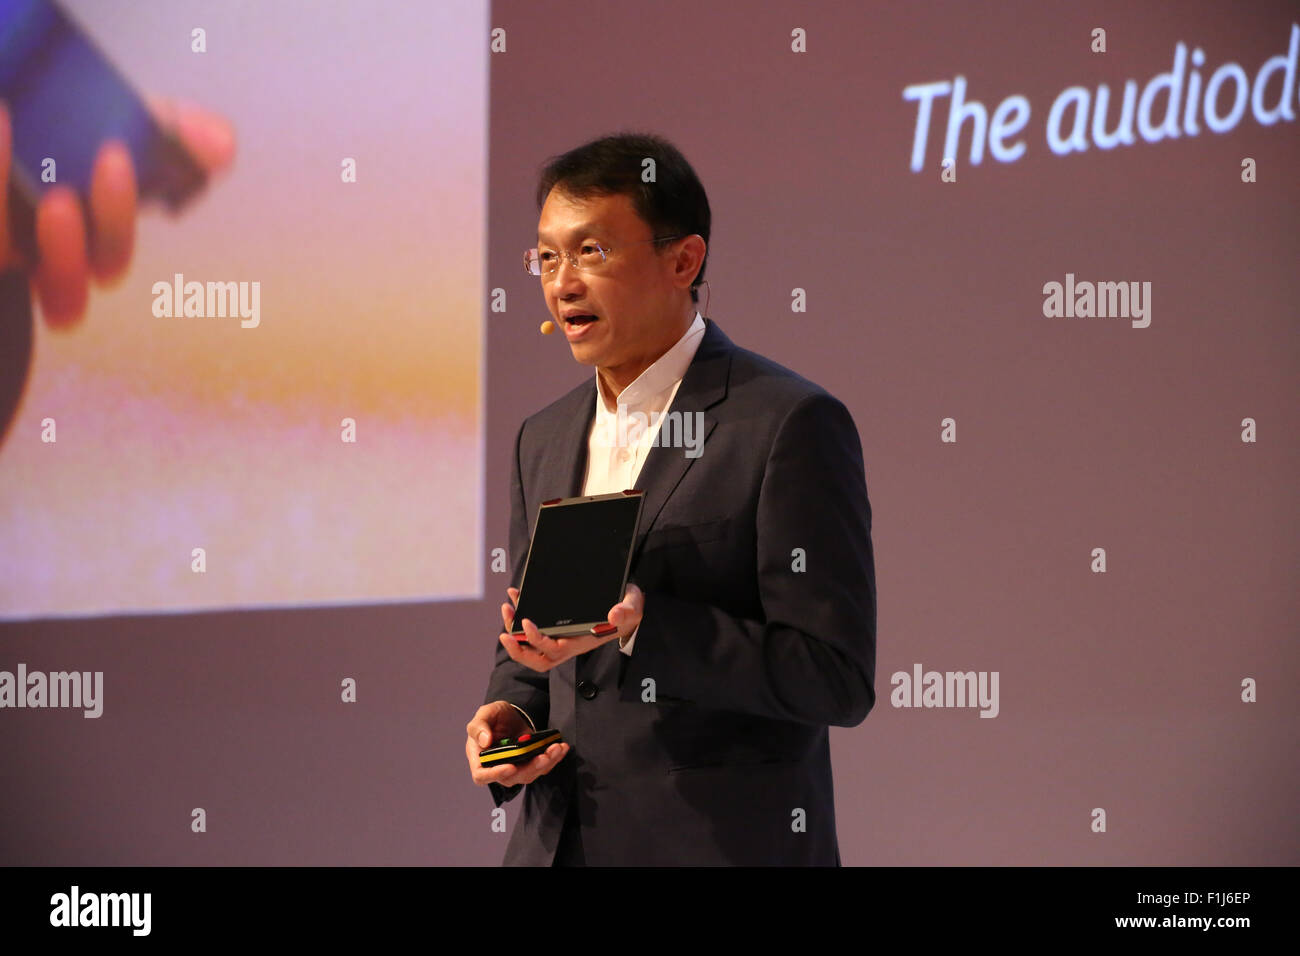 Berlin, Deutschland, 2. September 2015: CEO von Acer, Jason Chen präsentiert aktuelle Predator 8 Gaming-Tablet während Medienkonferenz auf IFA Consumer Electronics unlimited fair 2015. Stockfoto